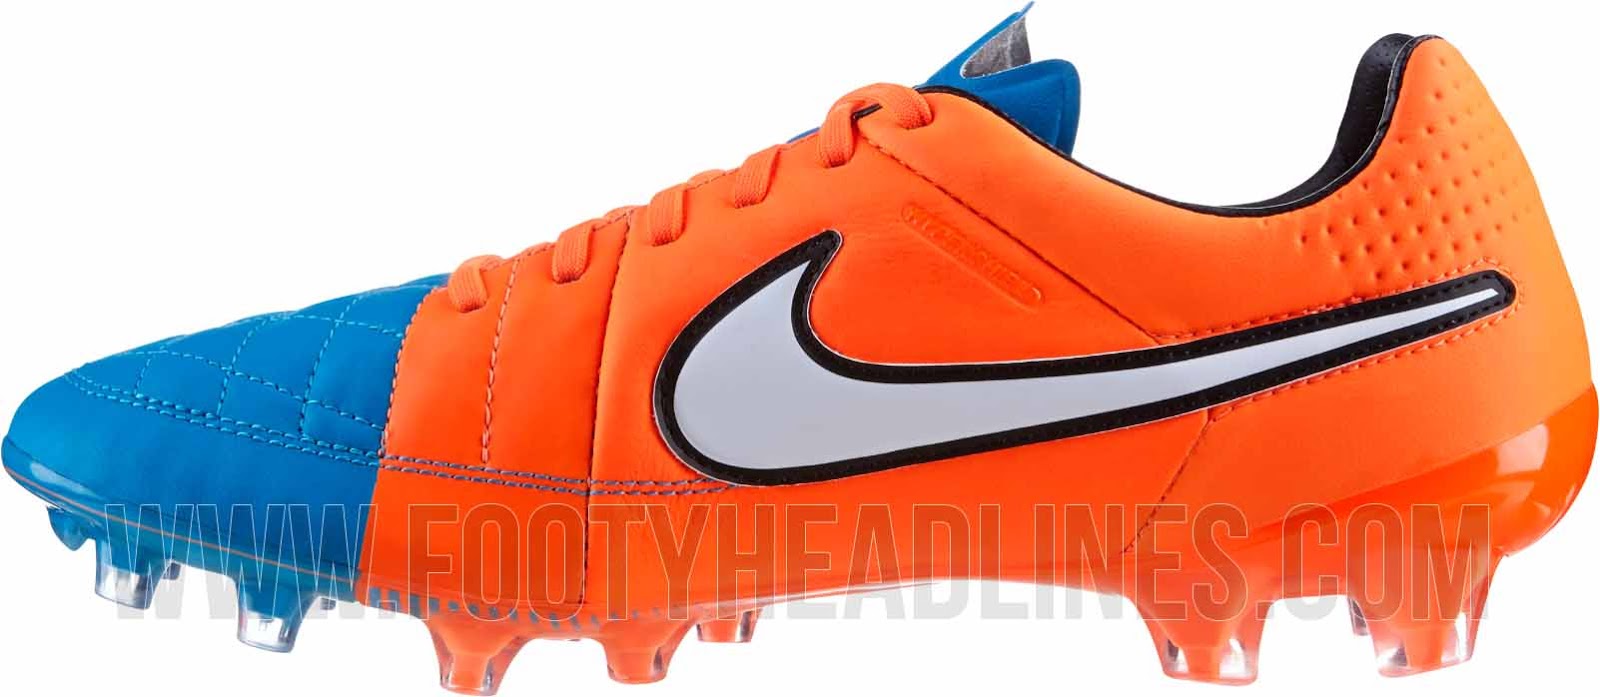 / Orange Nike Legend V 14-15 Boot Colorway Released - Footy Headlines